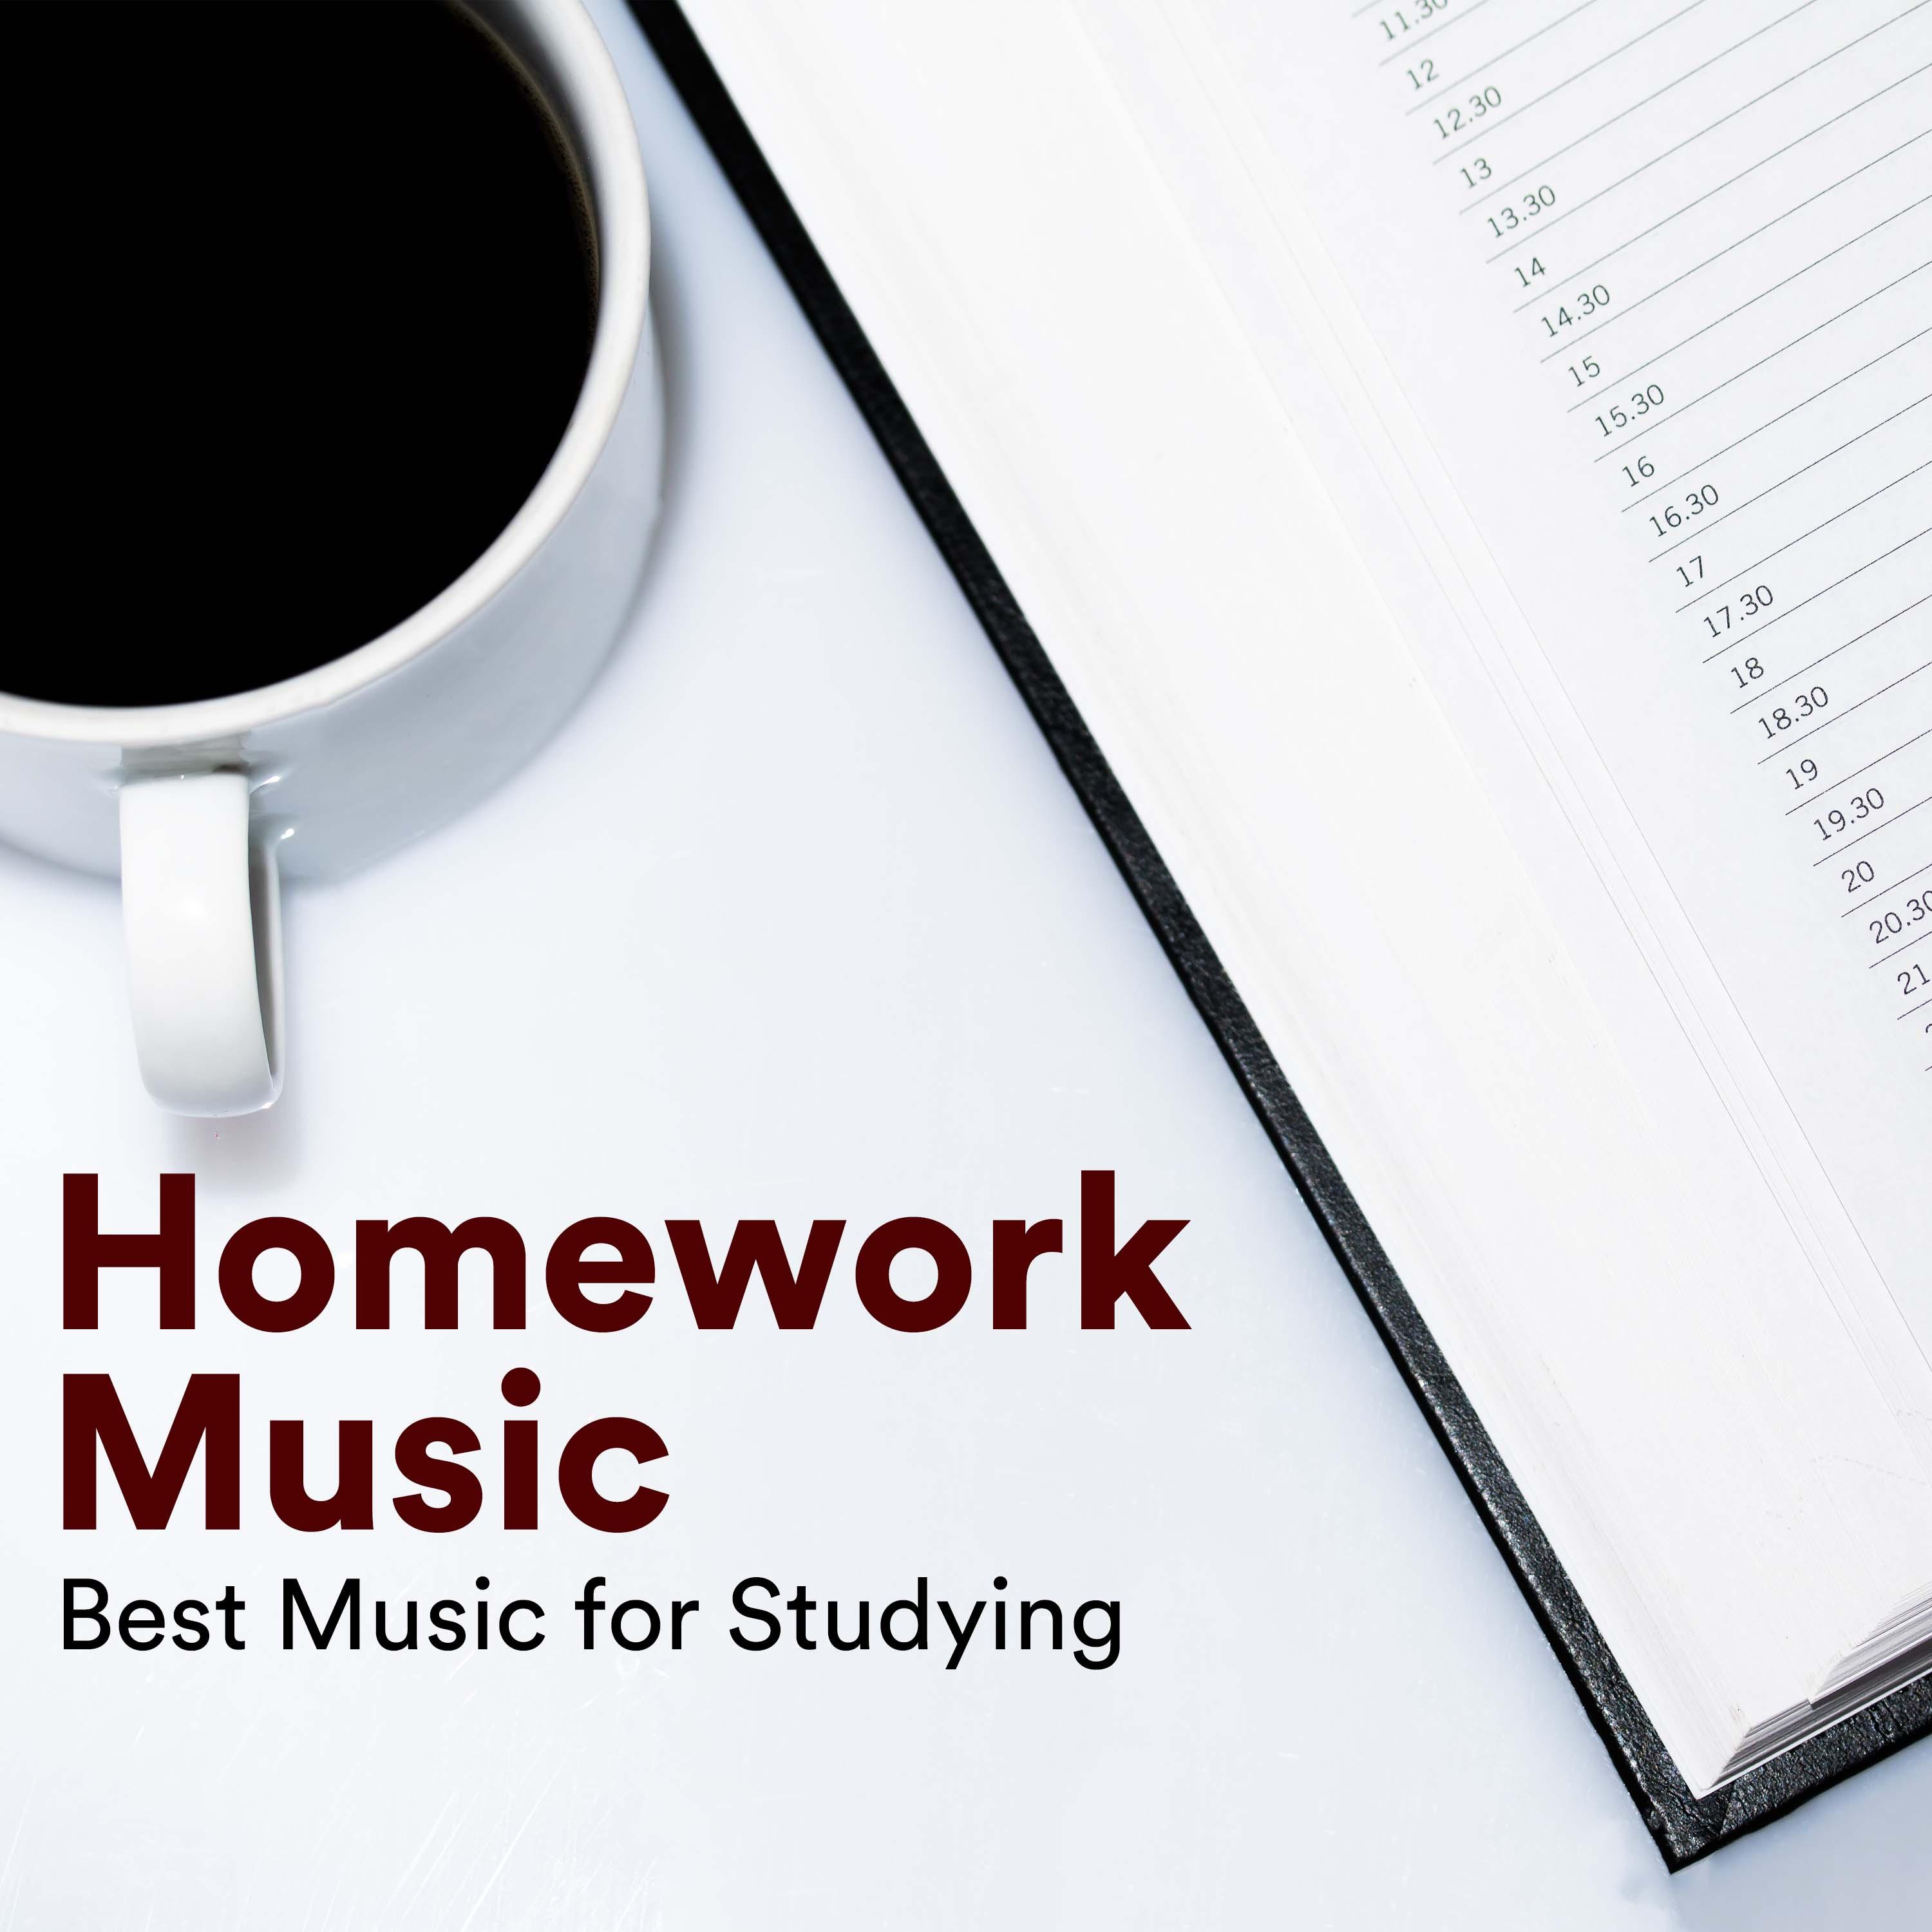 Homework Music: Best Music for Studying